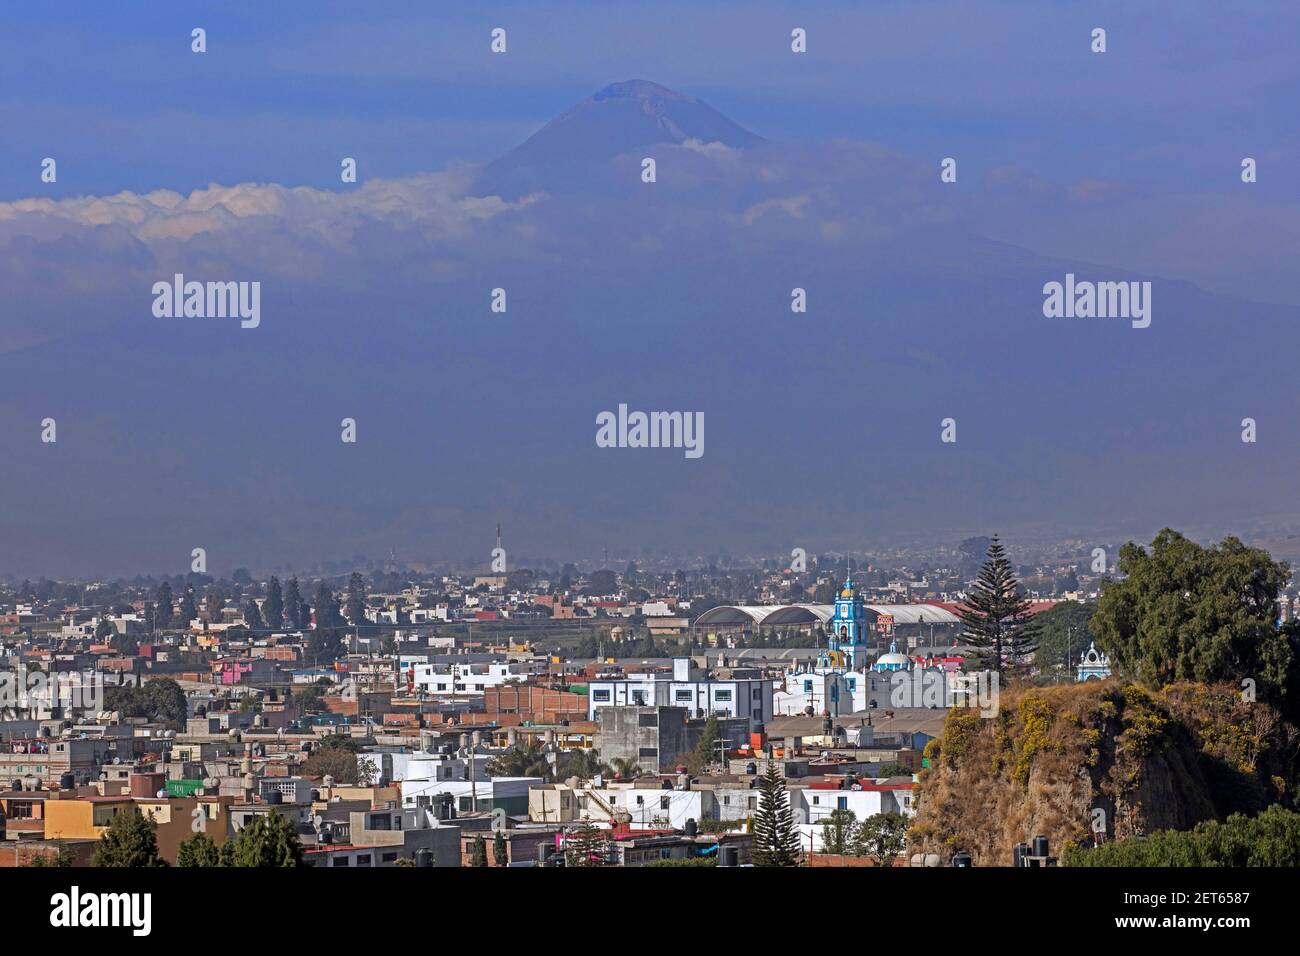 Vista sobre el volcán Popocatépetl / el Popo, estratovolcán activo, y la ciudad Cholula, Puebla, México Foto de stock